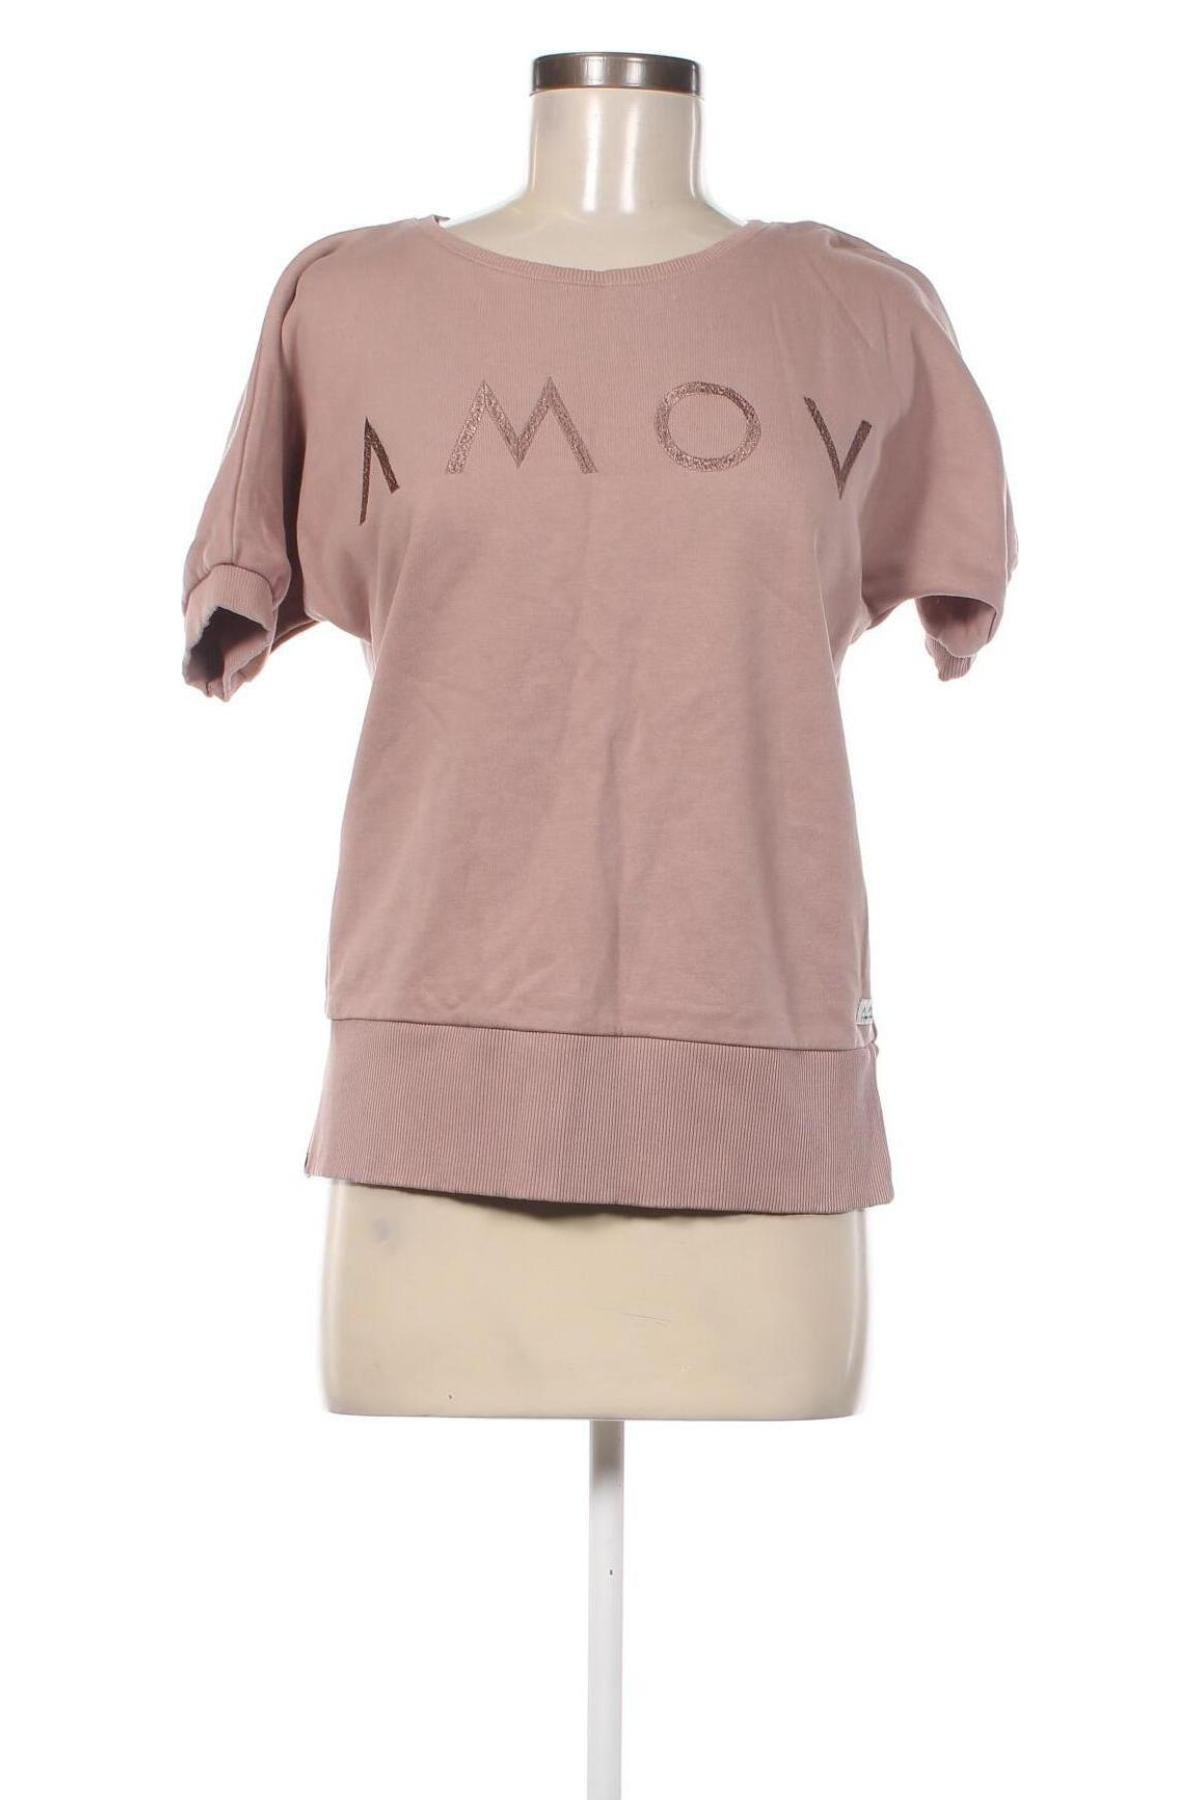 Bluză de femei AMOV, Mărime S, Culoare Mov deschis, Preț 28,16 Lei